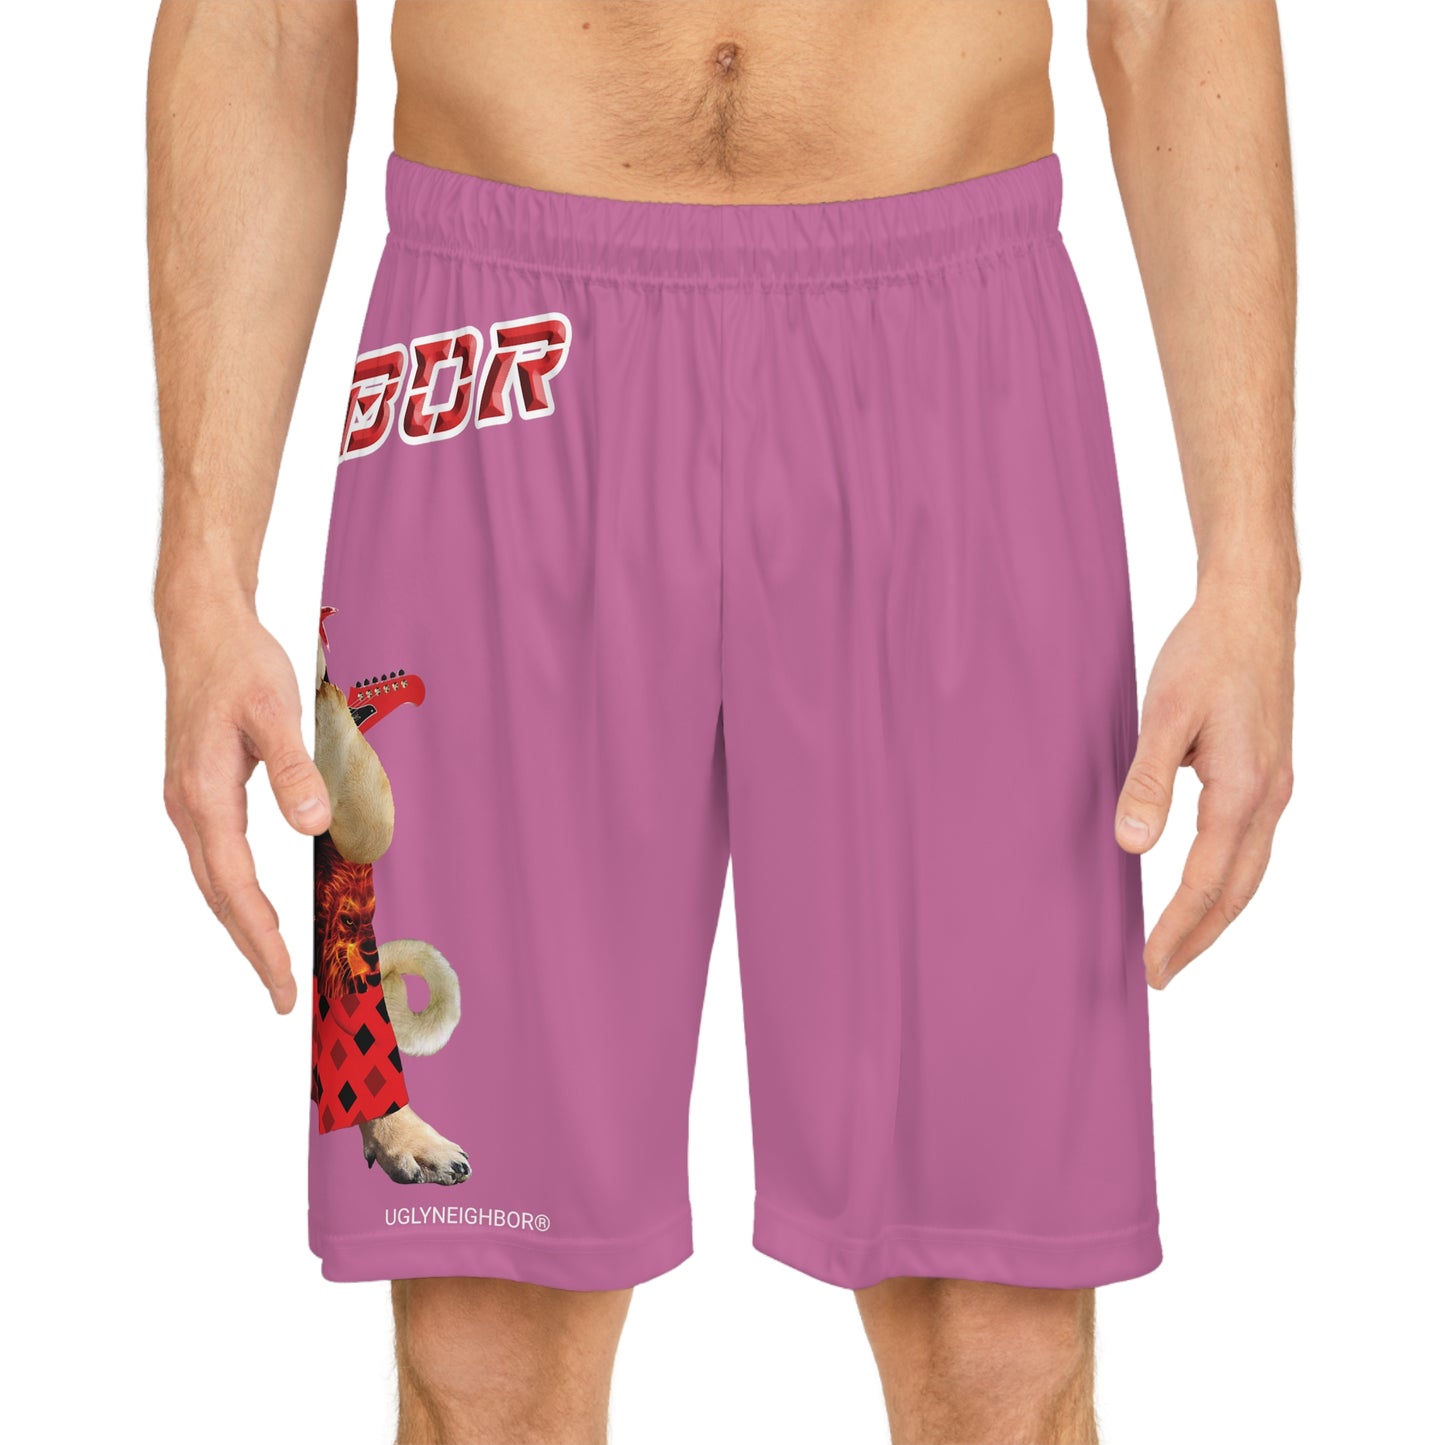 Ugly Neighbor II Basketball Shorts - Light Pink